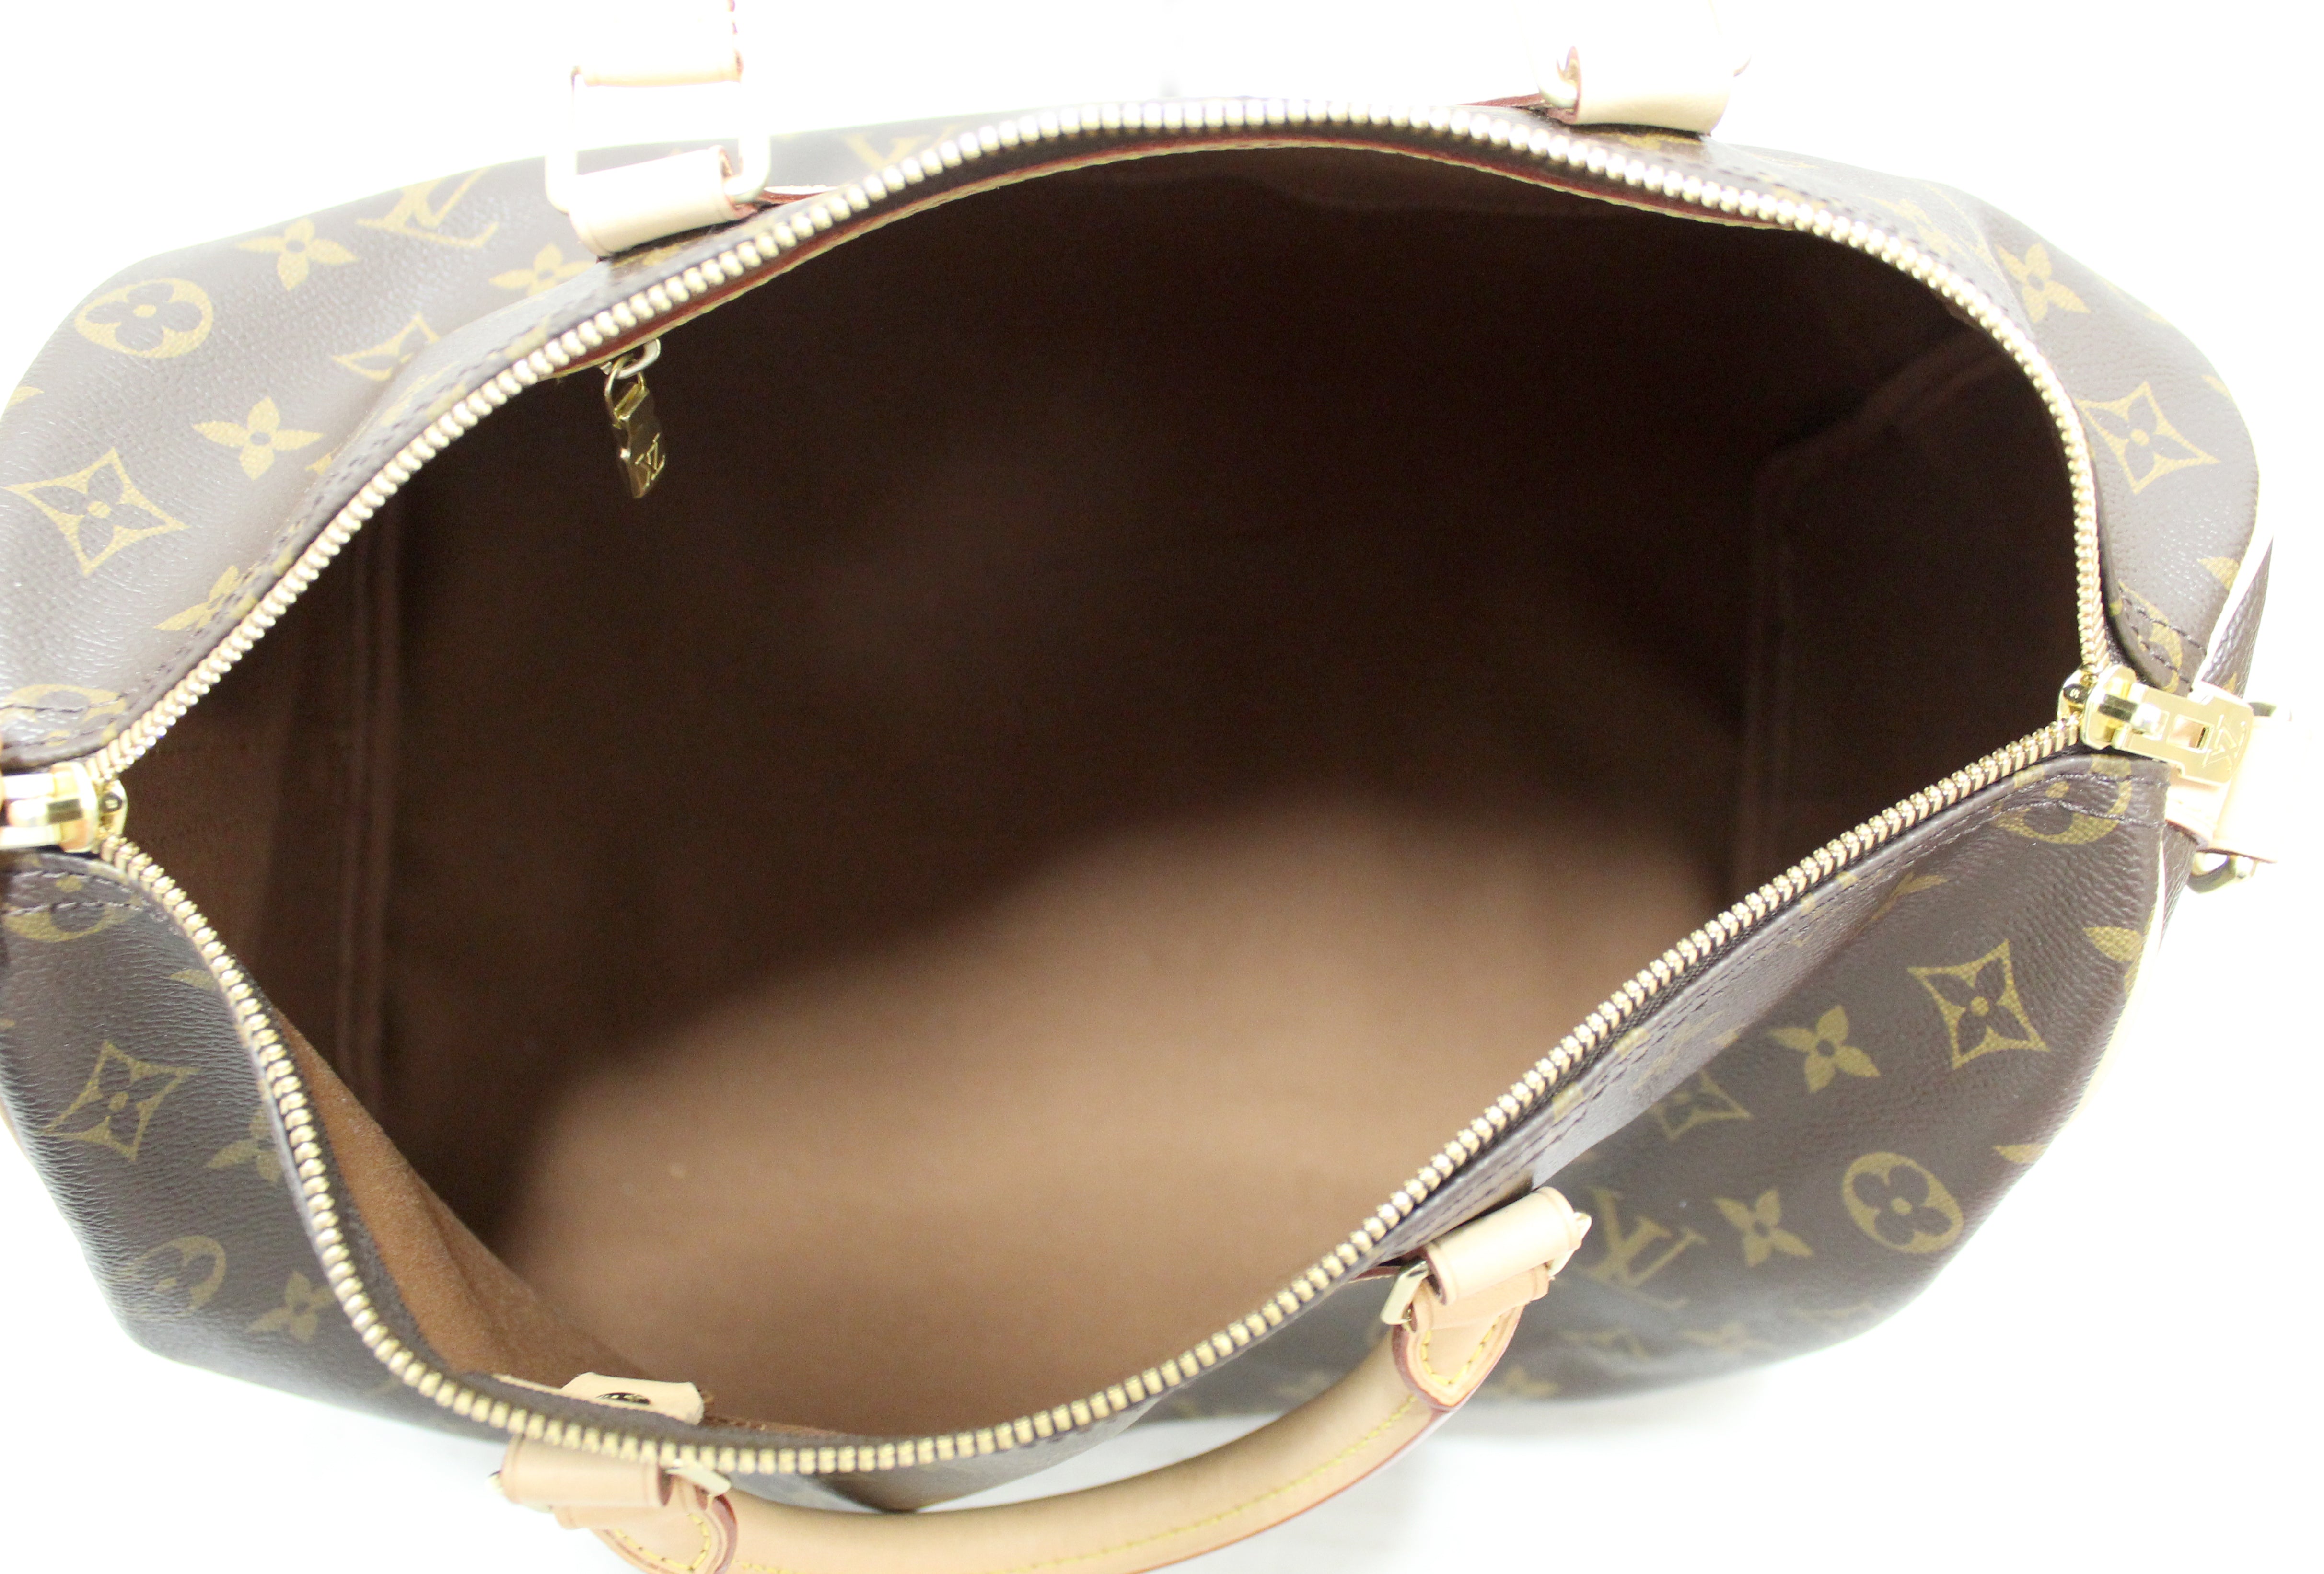 Authentic Louis Vuitton Classic Monogram Speedy 35 Bandouliere Bag